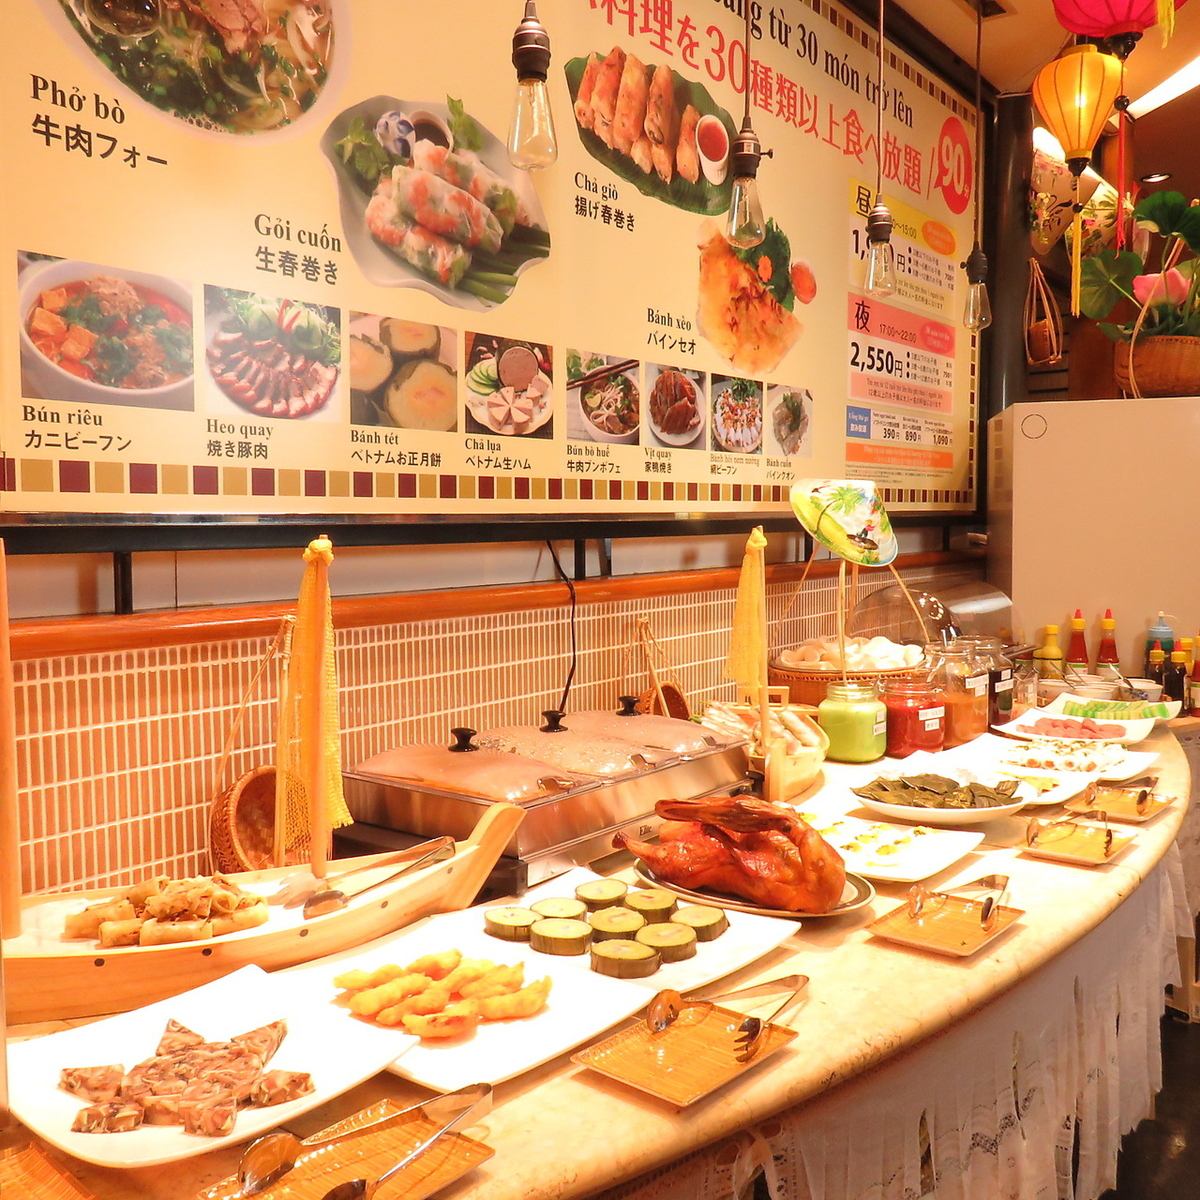 可以品尝到正宗的越南美食♪晚餐90分钟2,550日元〜也提供套餐。